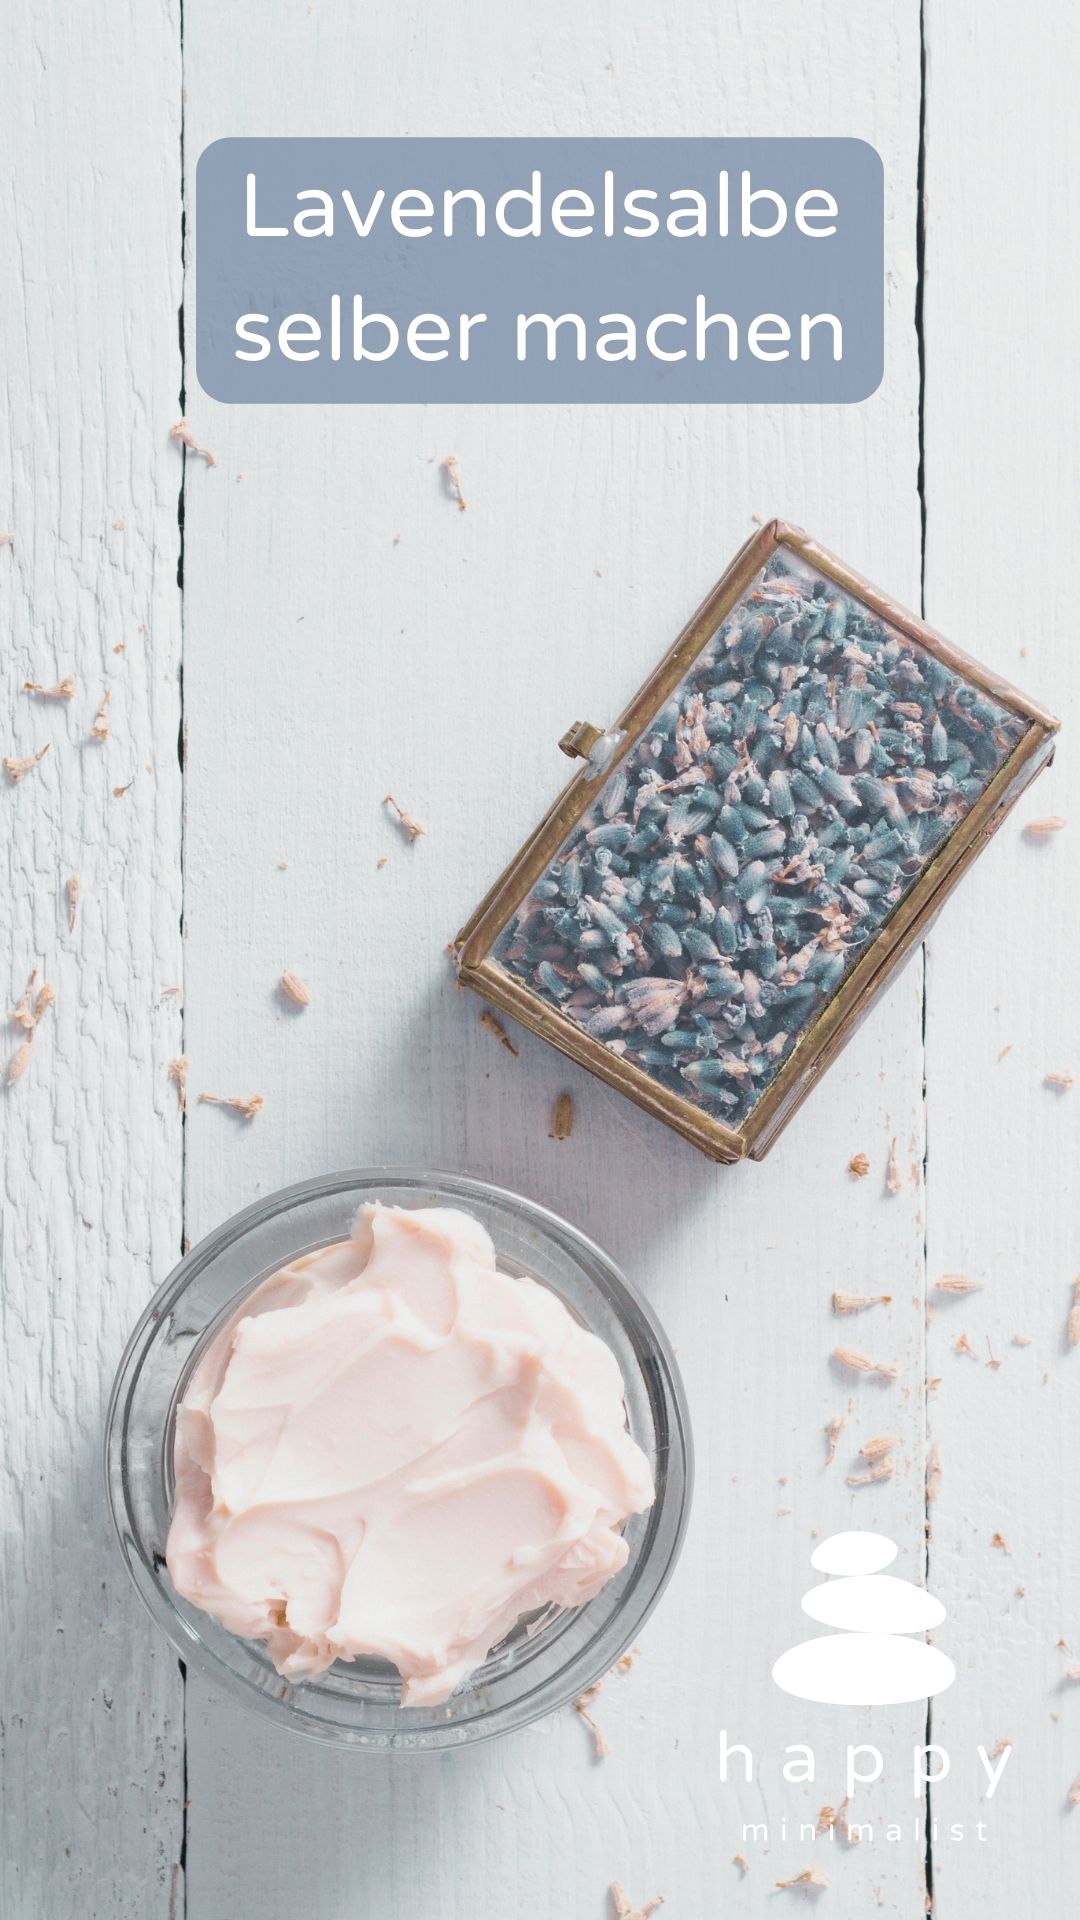 Entspannung und Hautpflege in einem - in diesem Beitrag zeigen wir dir, wie du deine eigene beruhigende Lavendelsalbe mit ätherischen Ölen herstellen kannst.